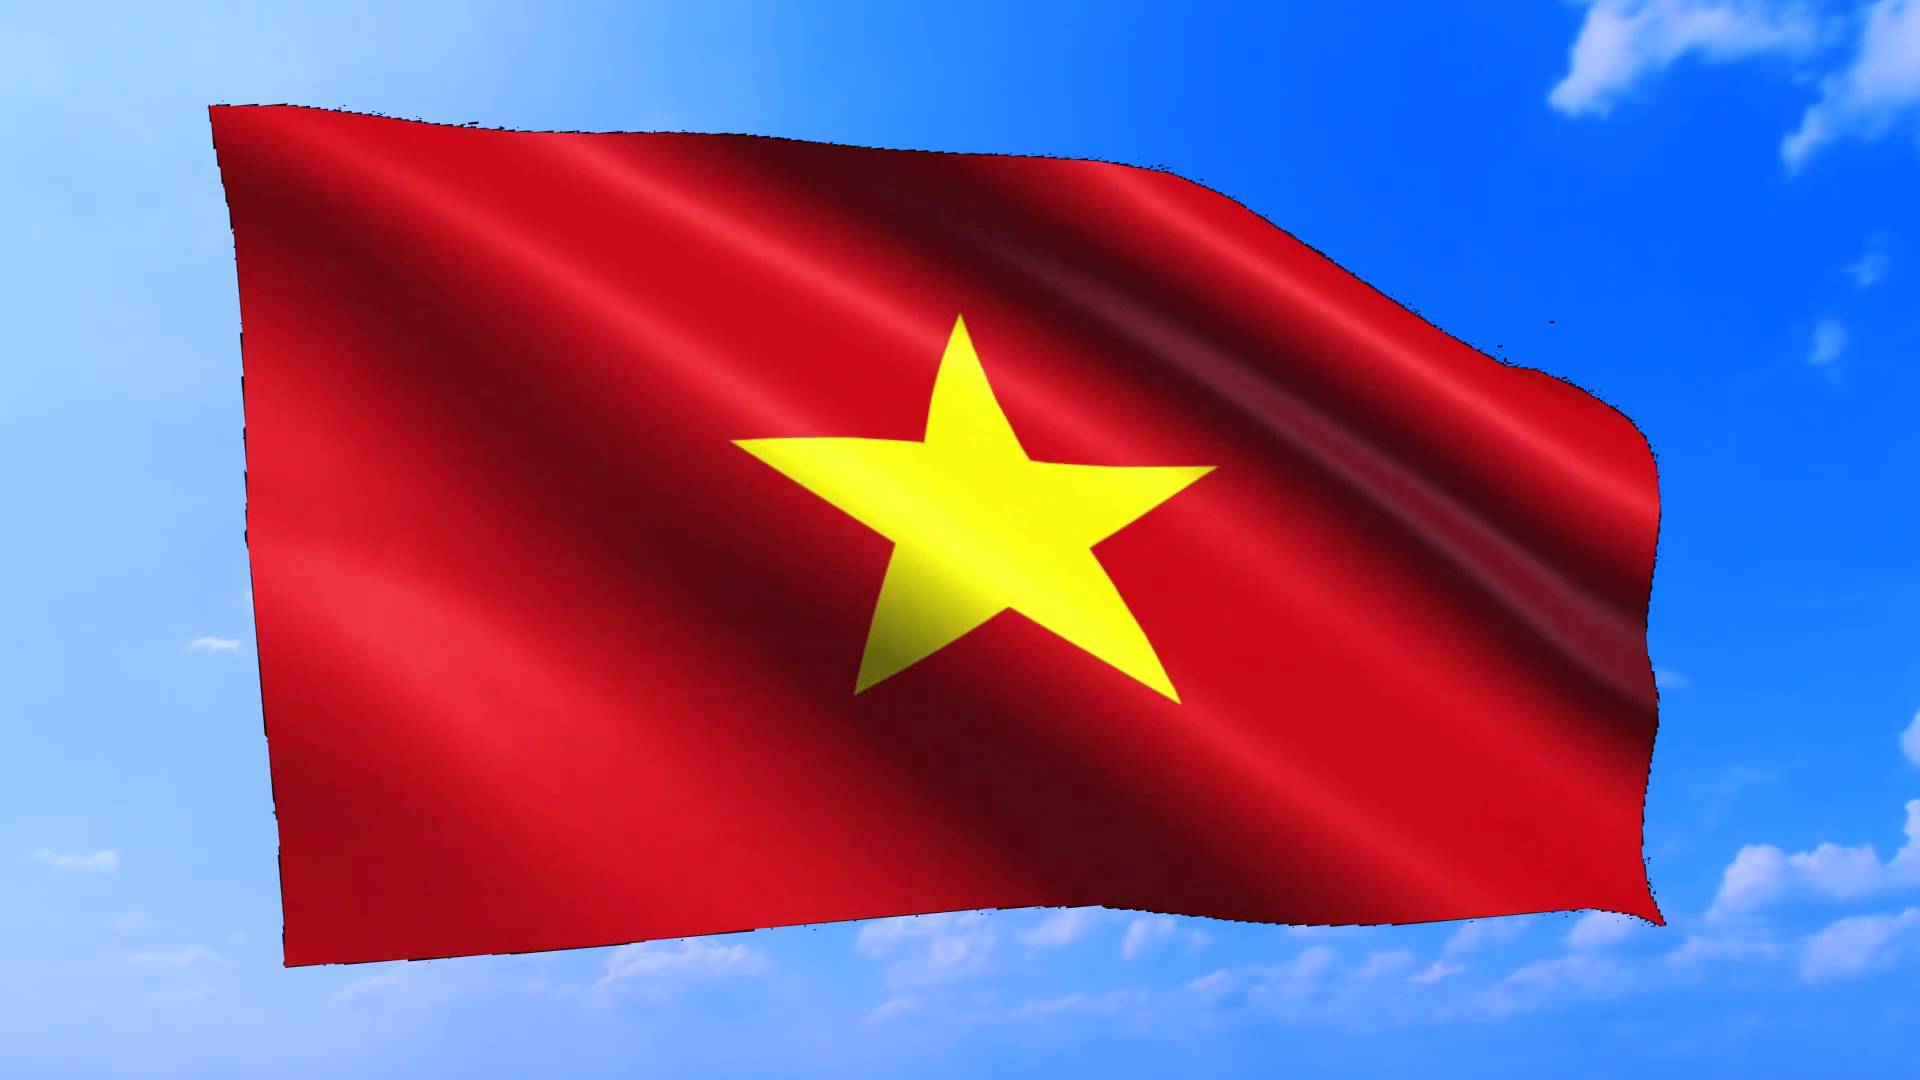 Hình Ảnh Cờ Đỏ Sao Vàng - Lá Cờ Việt Nam Mang Niềm Tự Hào Dân Tộc